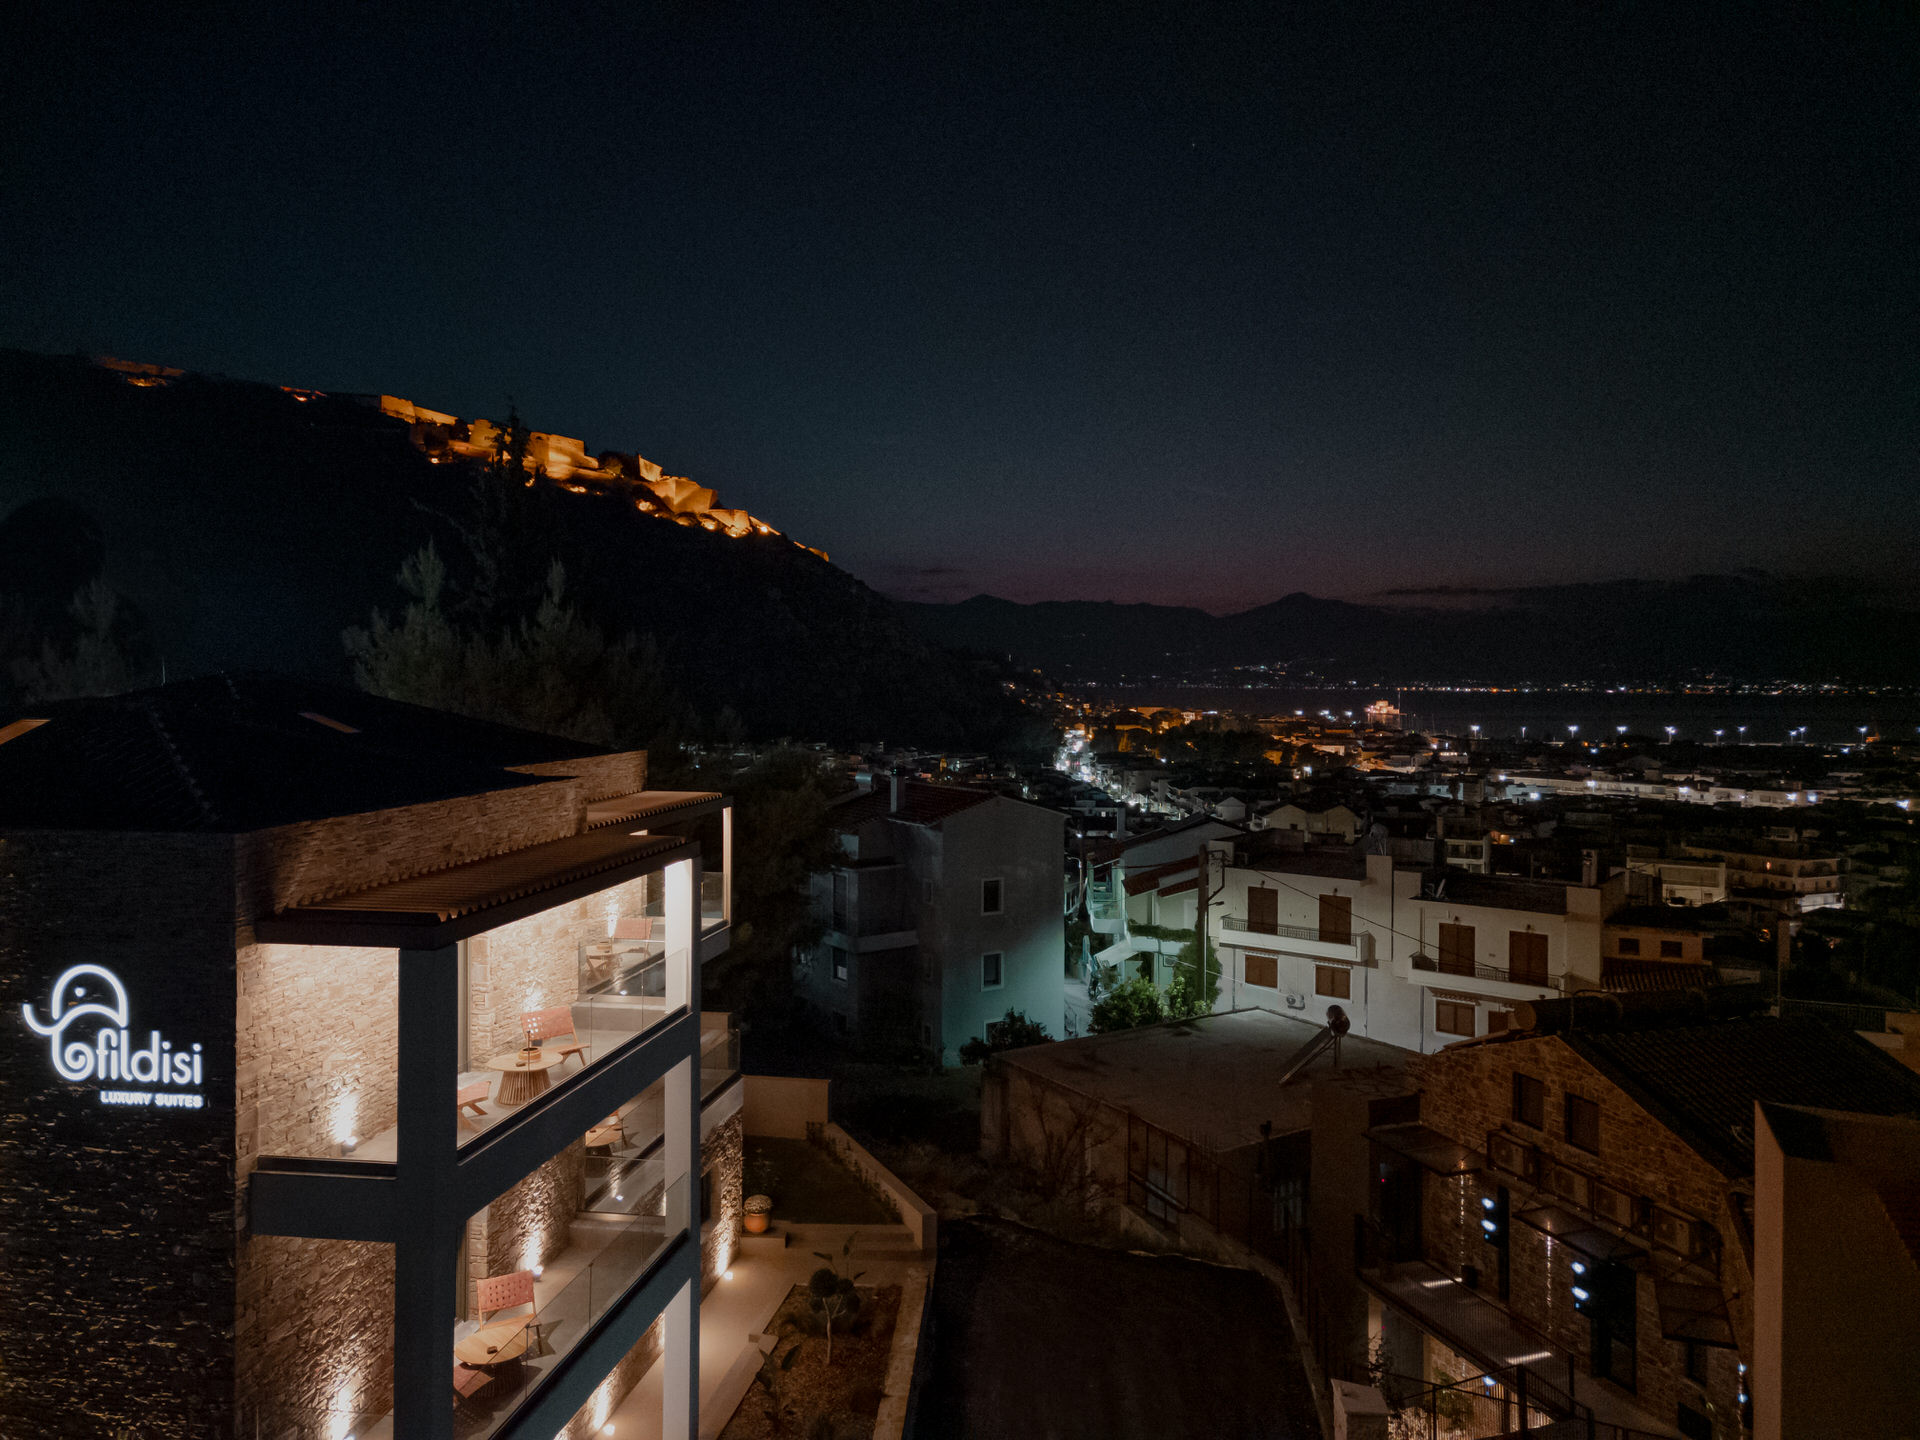 Fildisi Luxury Suites: Σουίτες με πολυτελείς ανέσεις και μαγευτική θέα στο Ναύπλιο